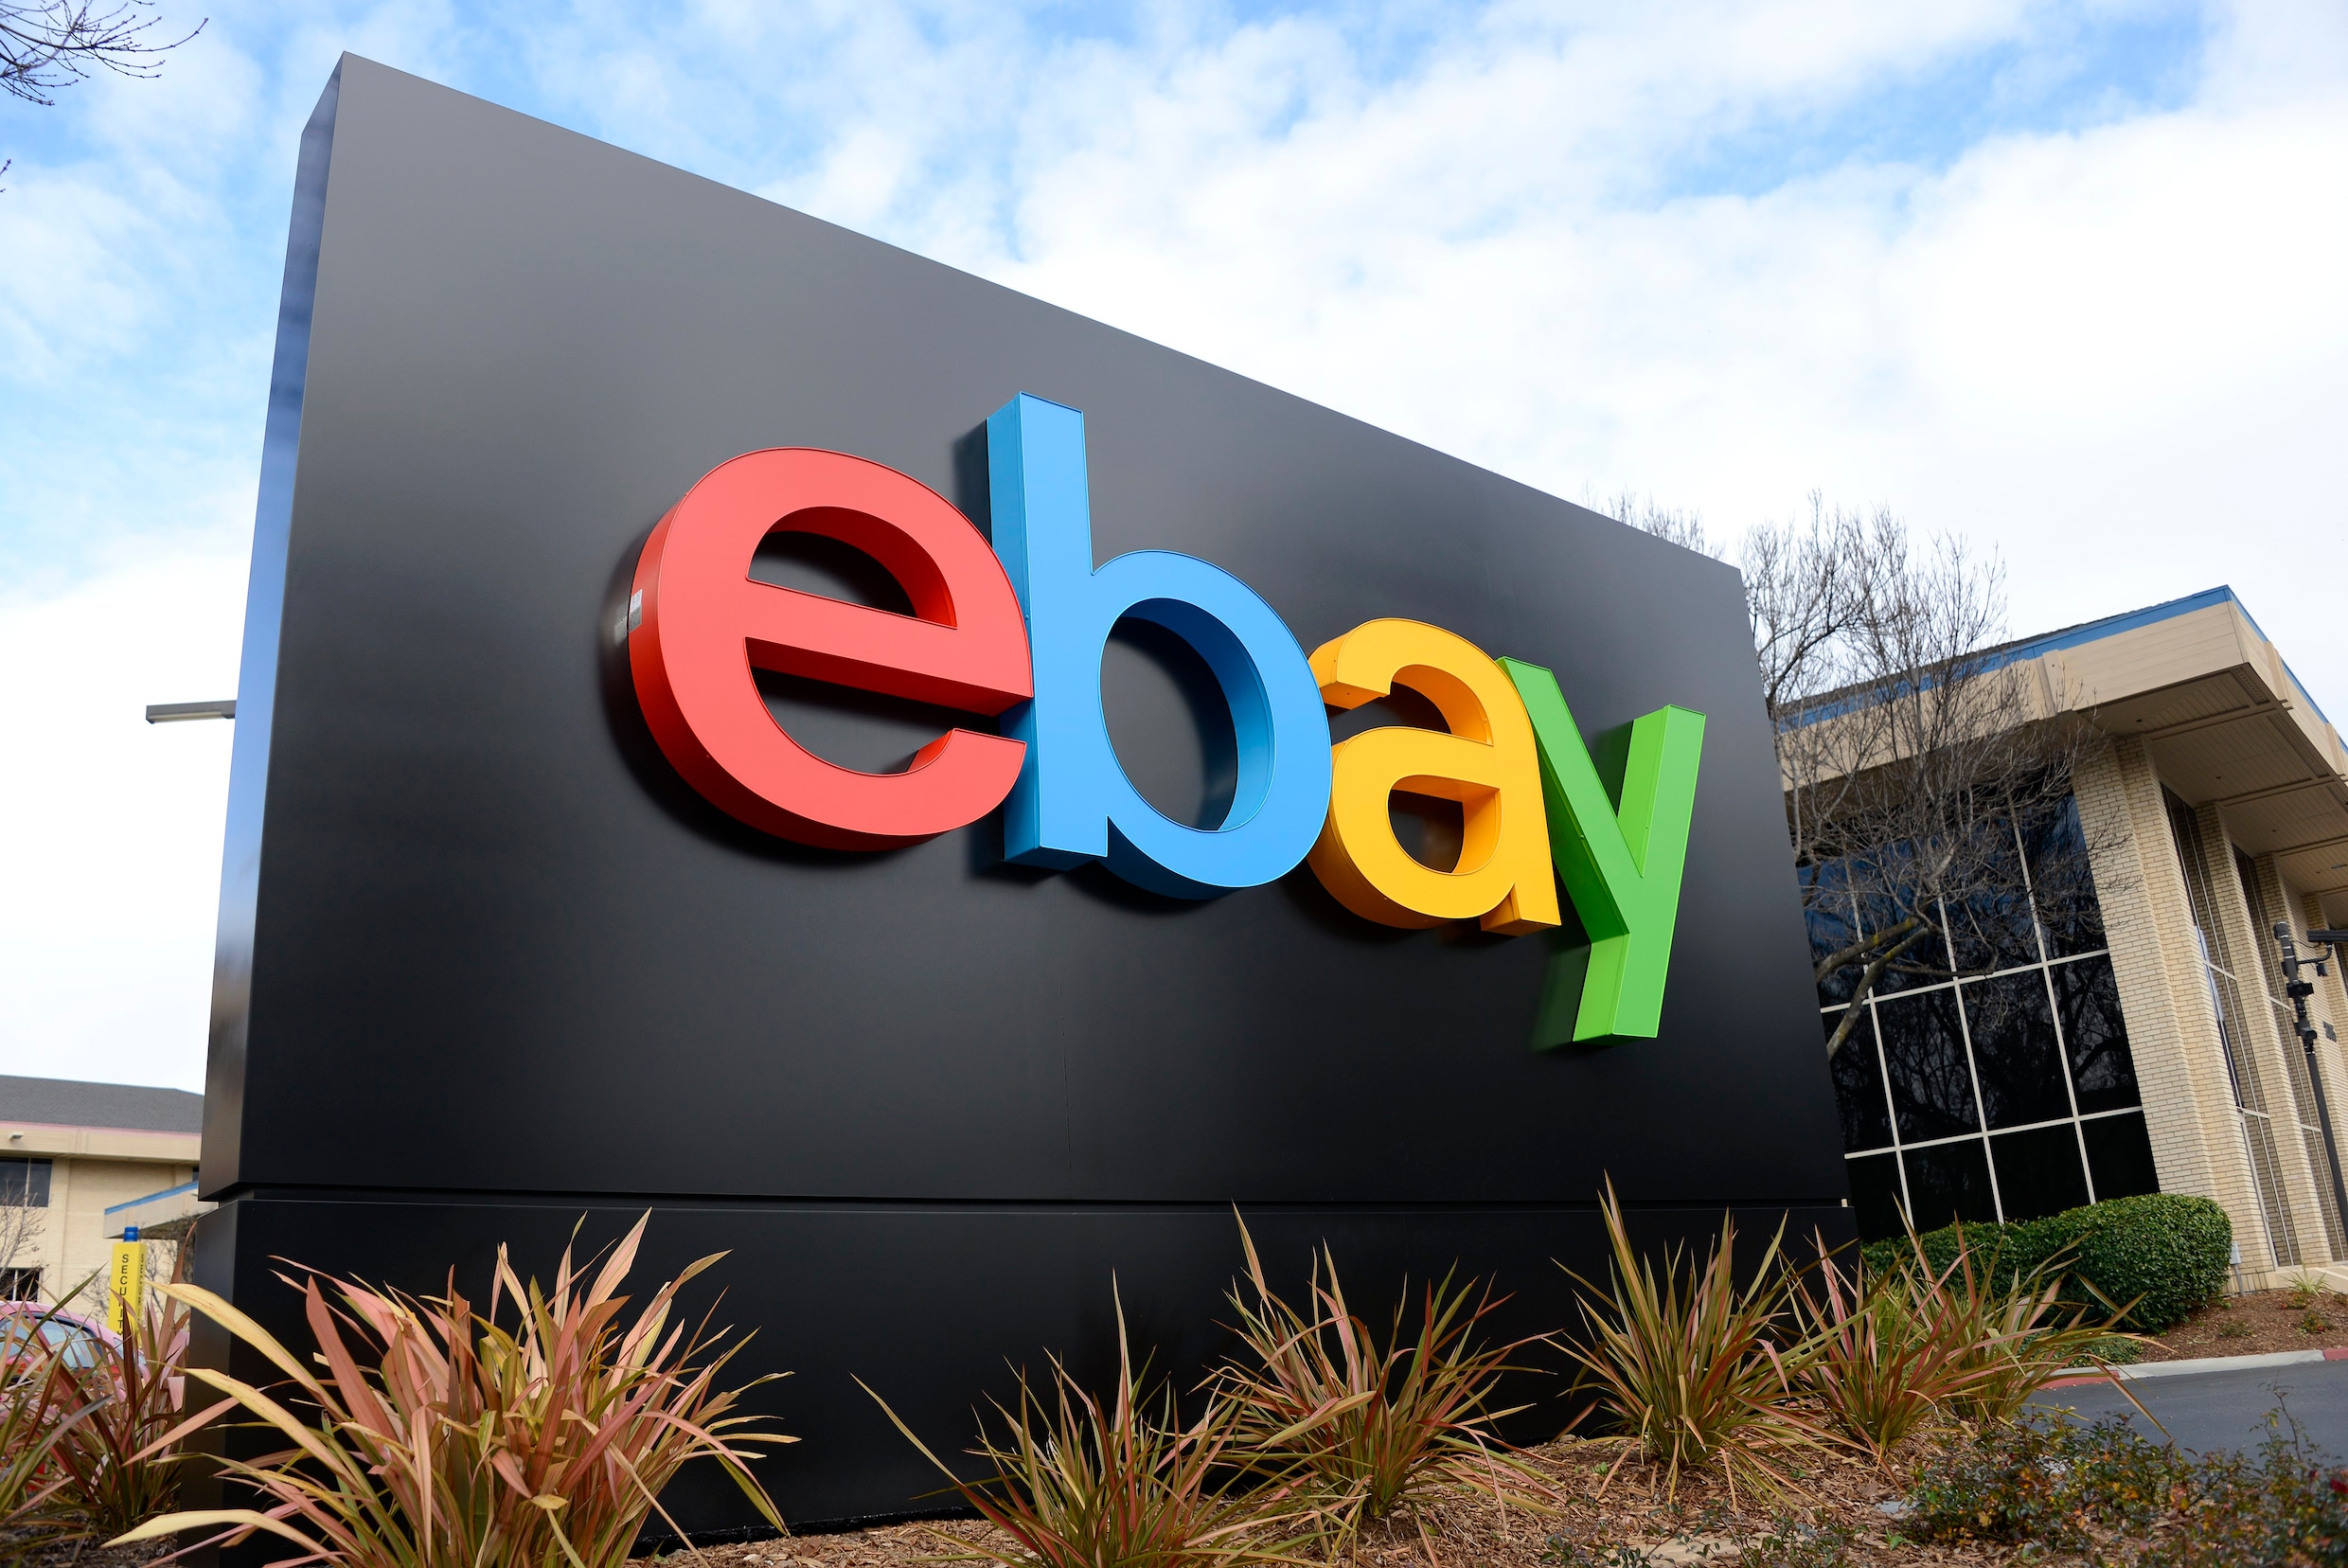 Veilingsite eBay klaagt Amazon aan voor illegaal werven van verkopers